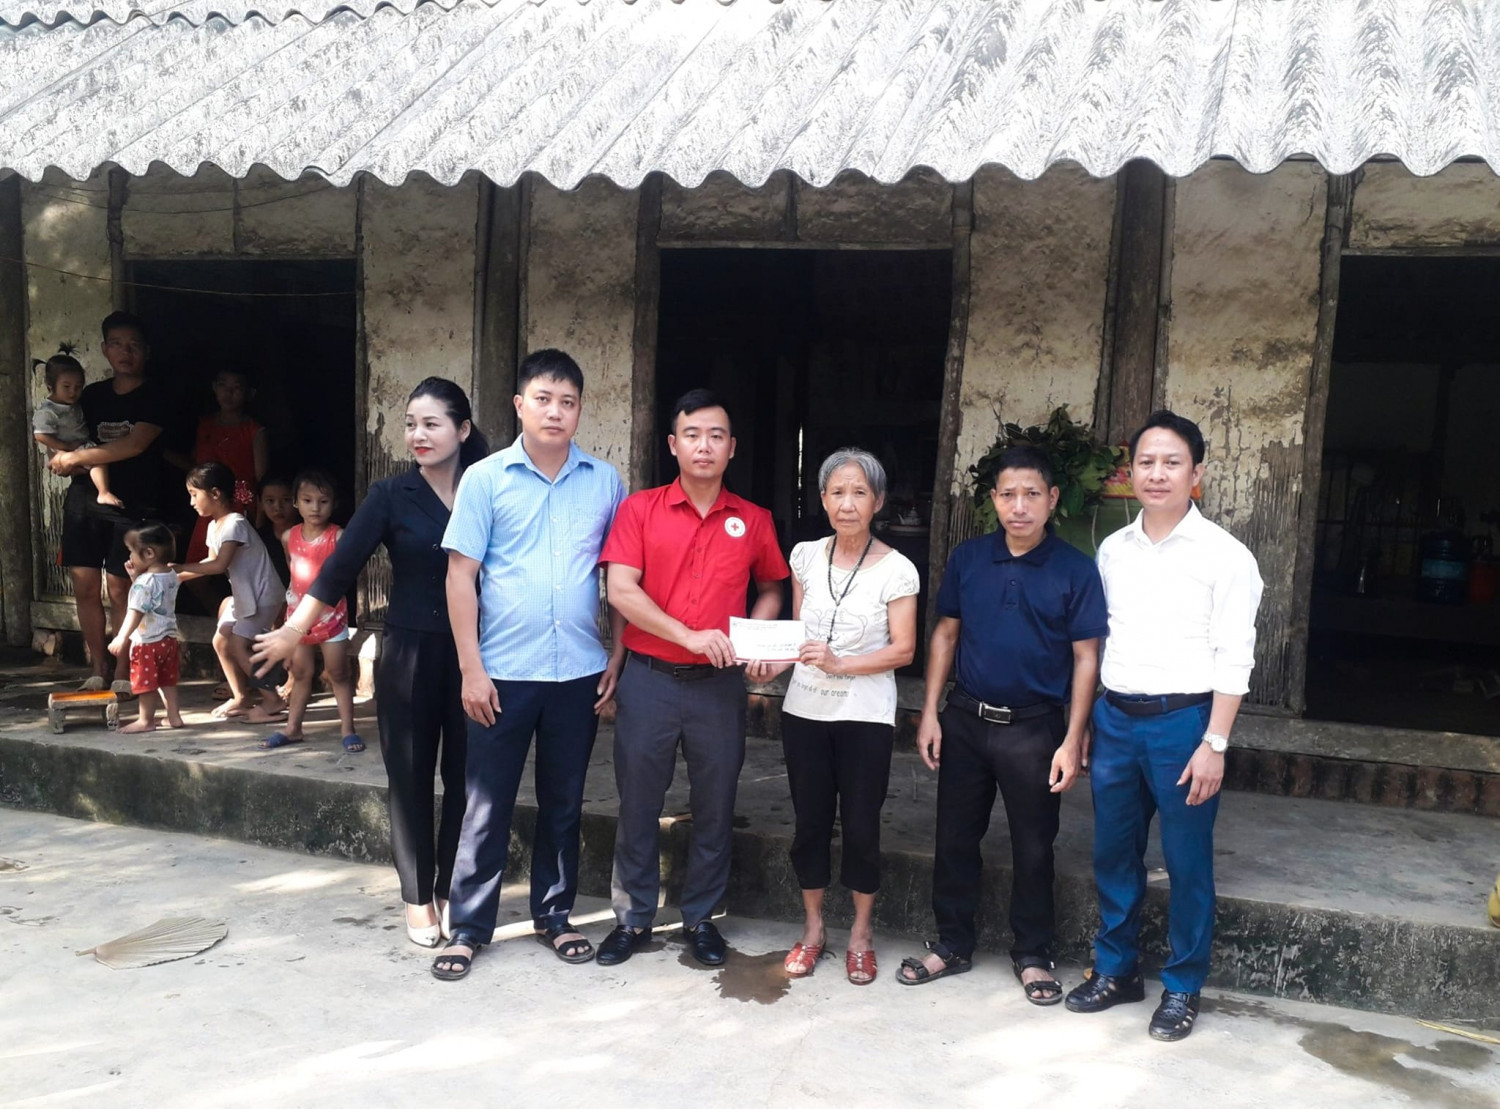 Hội CTĐ huyện Cẩm Khê trao tiền xây dựng nhà Nhân đạo đợt 1 cho gia đình bà Lê Thị Bẩy ở khu Phú Yên, xã Tạ xá, huyện Cẩm Khê